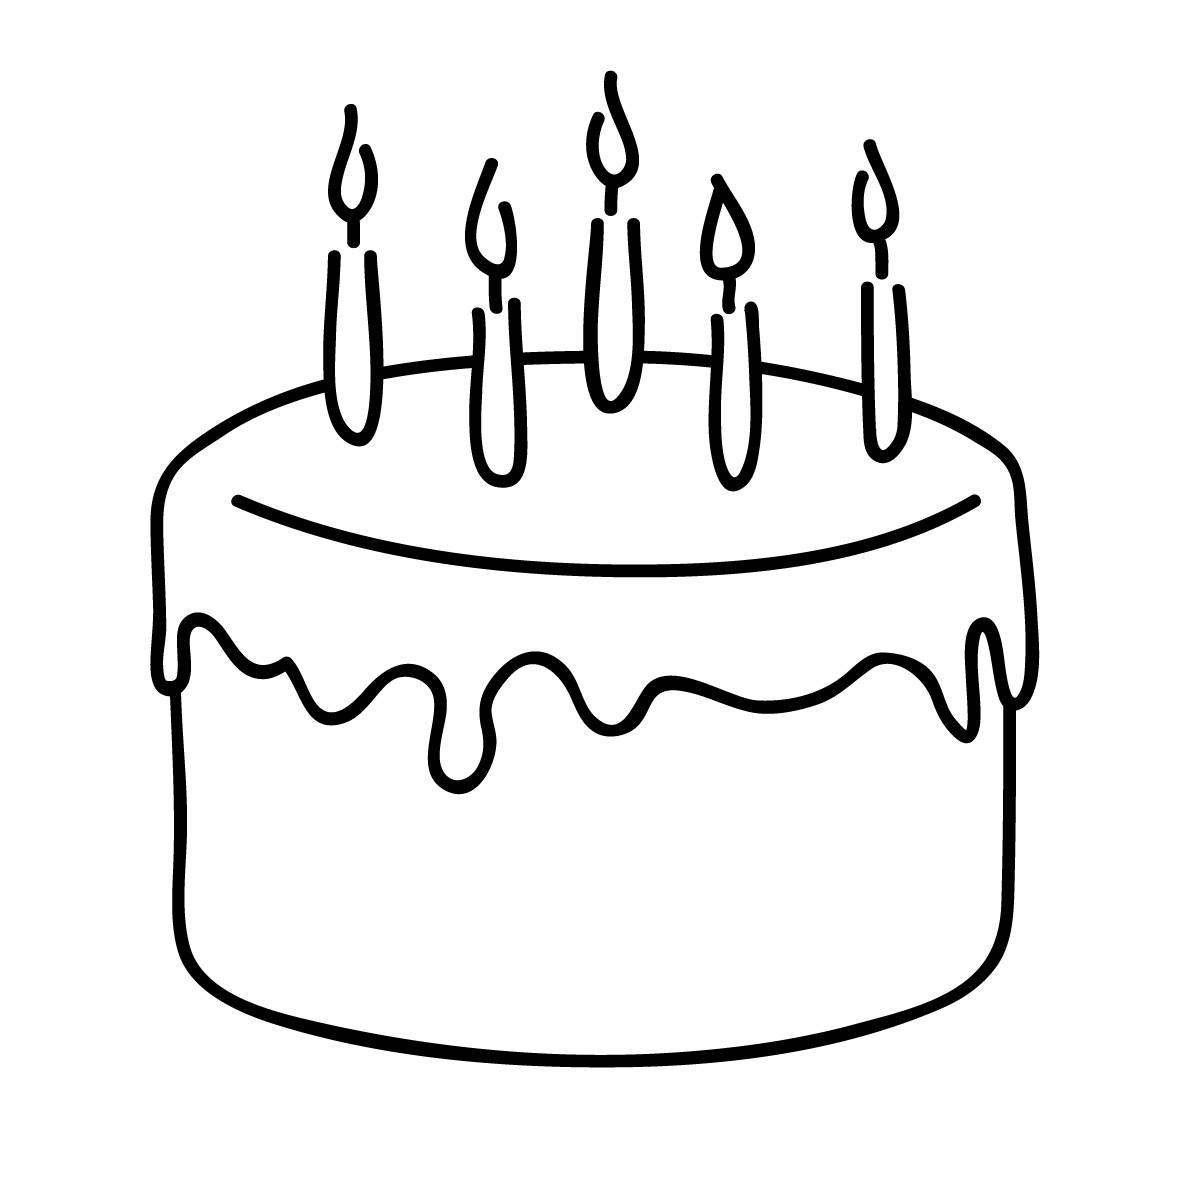 Happy Birthday Cake Vector Design Images, Happy Birthday Cake Icon For Your  Project, Project Icons, Birthday Icons, Cake Icons PNG Image For Free  Download | Cake icon, Birthday icon, Cake vector